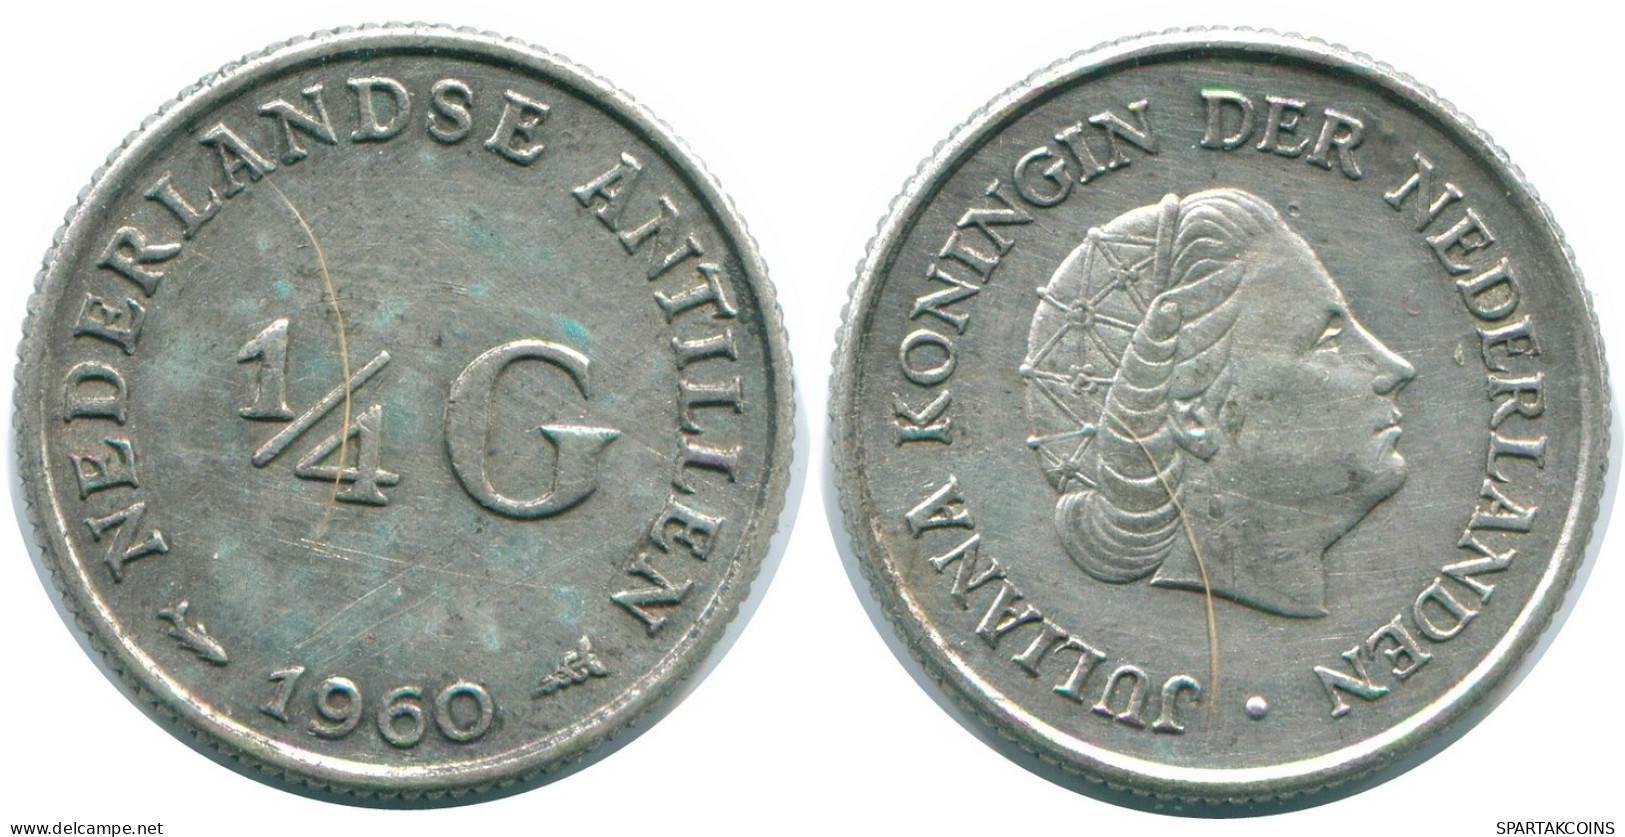 1/4 GULDEN 1960 NIEDERLÄNDISCHE ANTILLEN SILBER Koloniale Münze #NL11024.4.D.A - Nederlandse Antillen